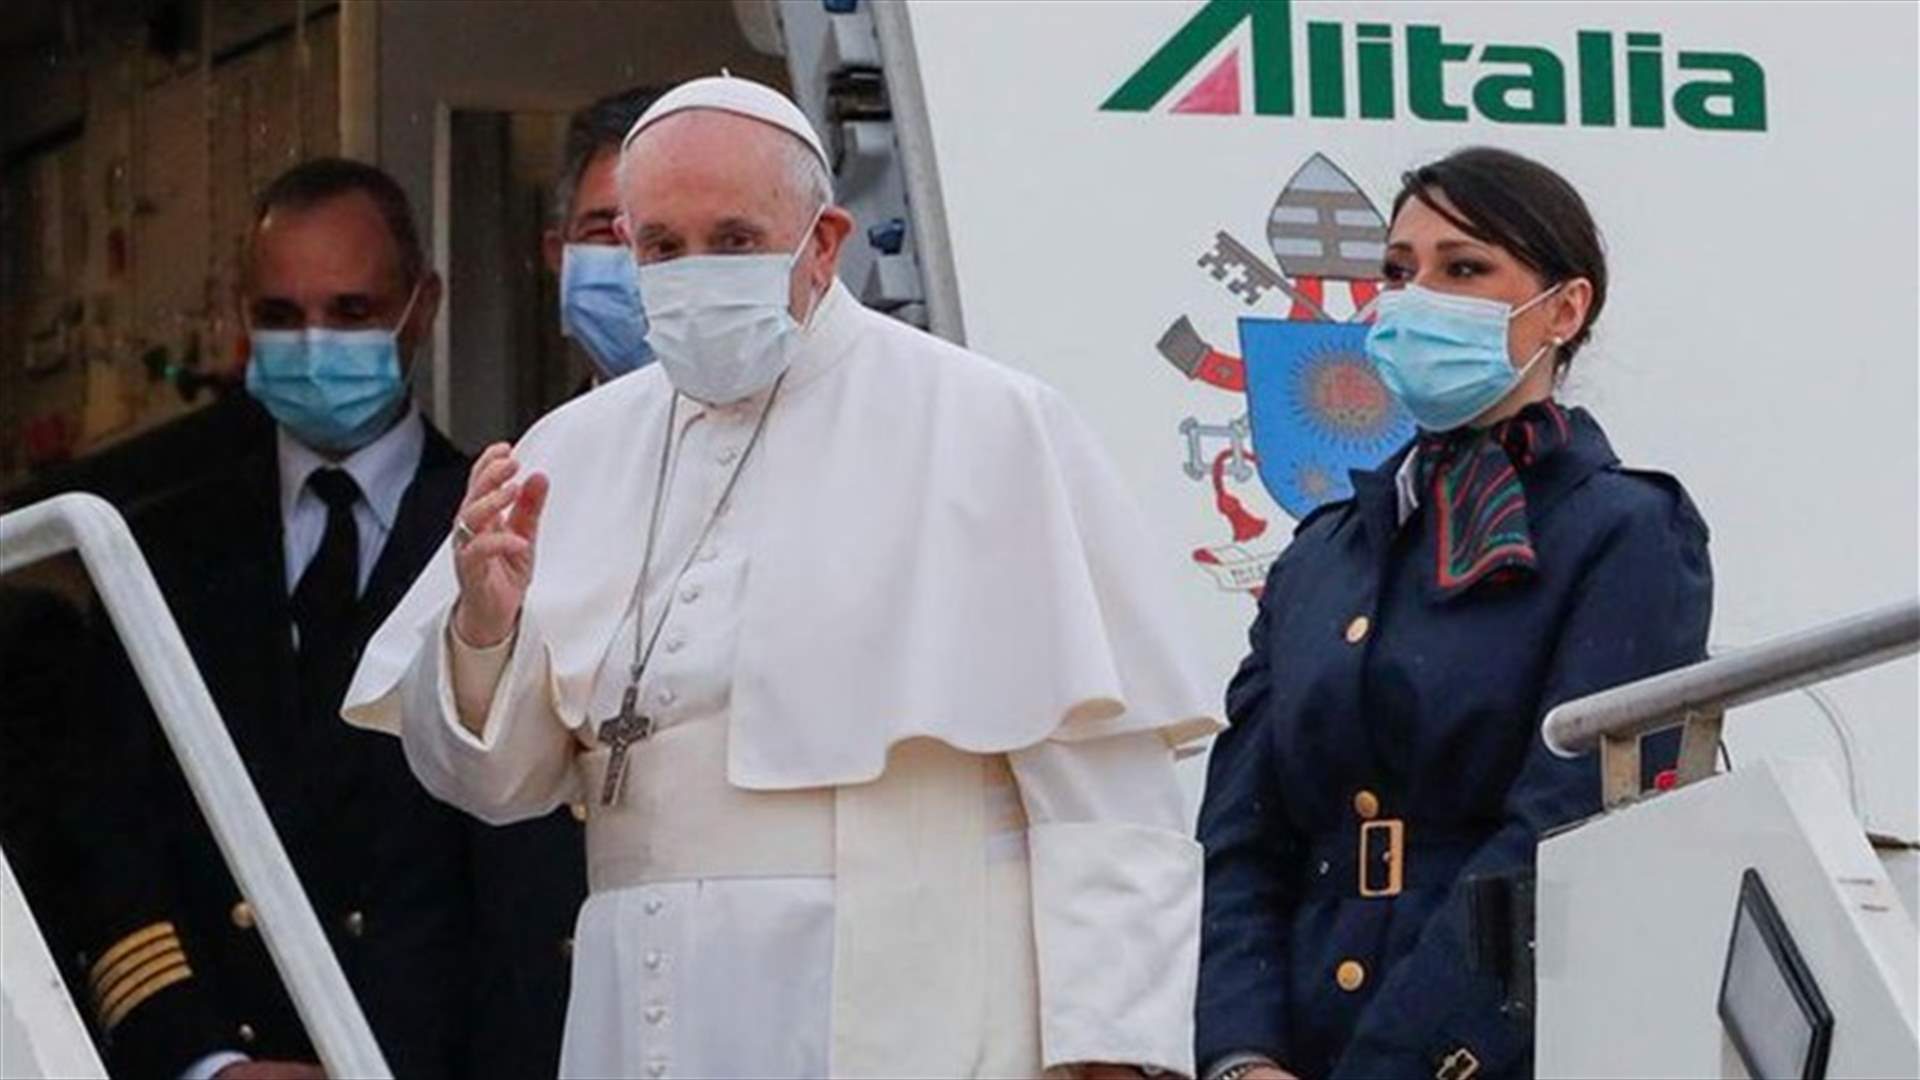 البابا فرنسيس الى العراق... اليكم كامل تفاصيل الزيارة